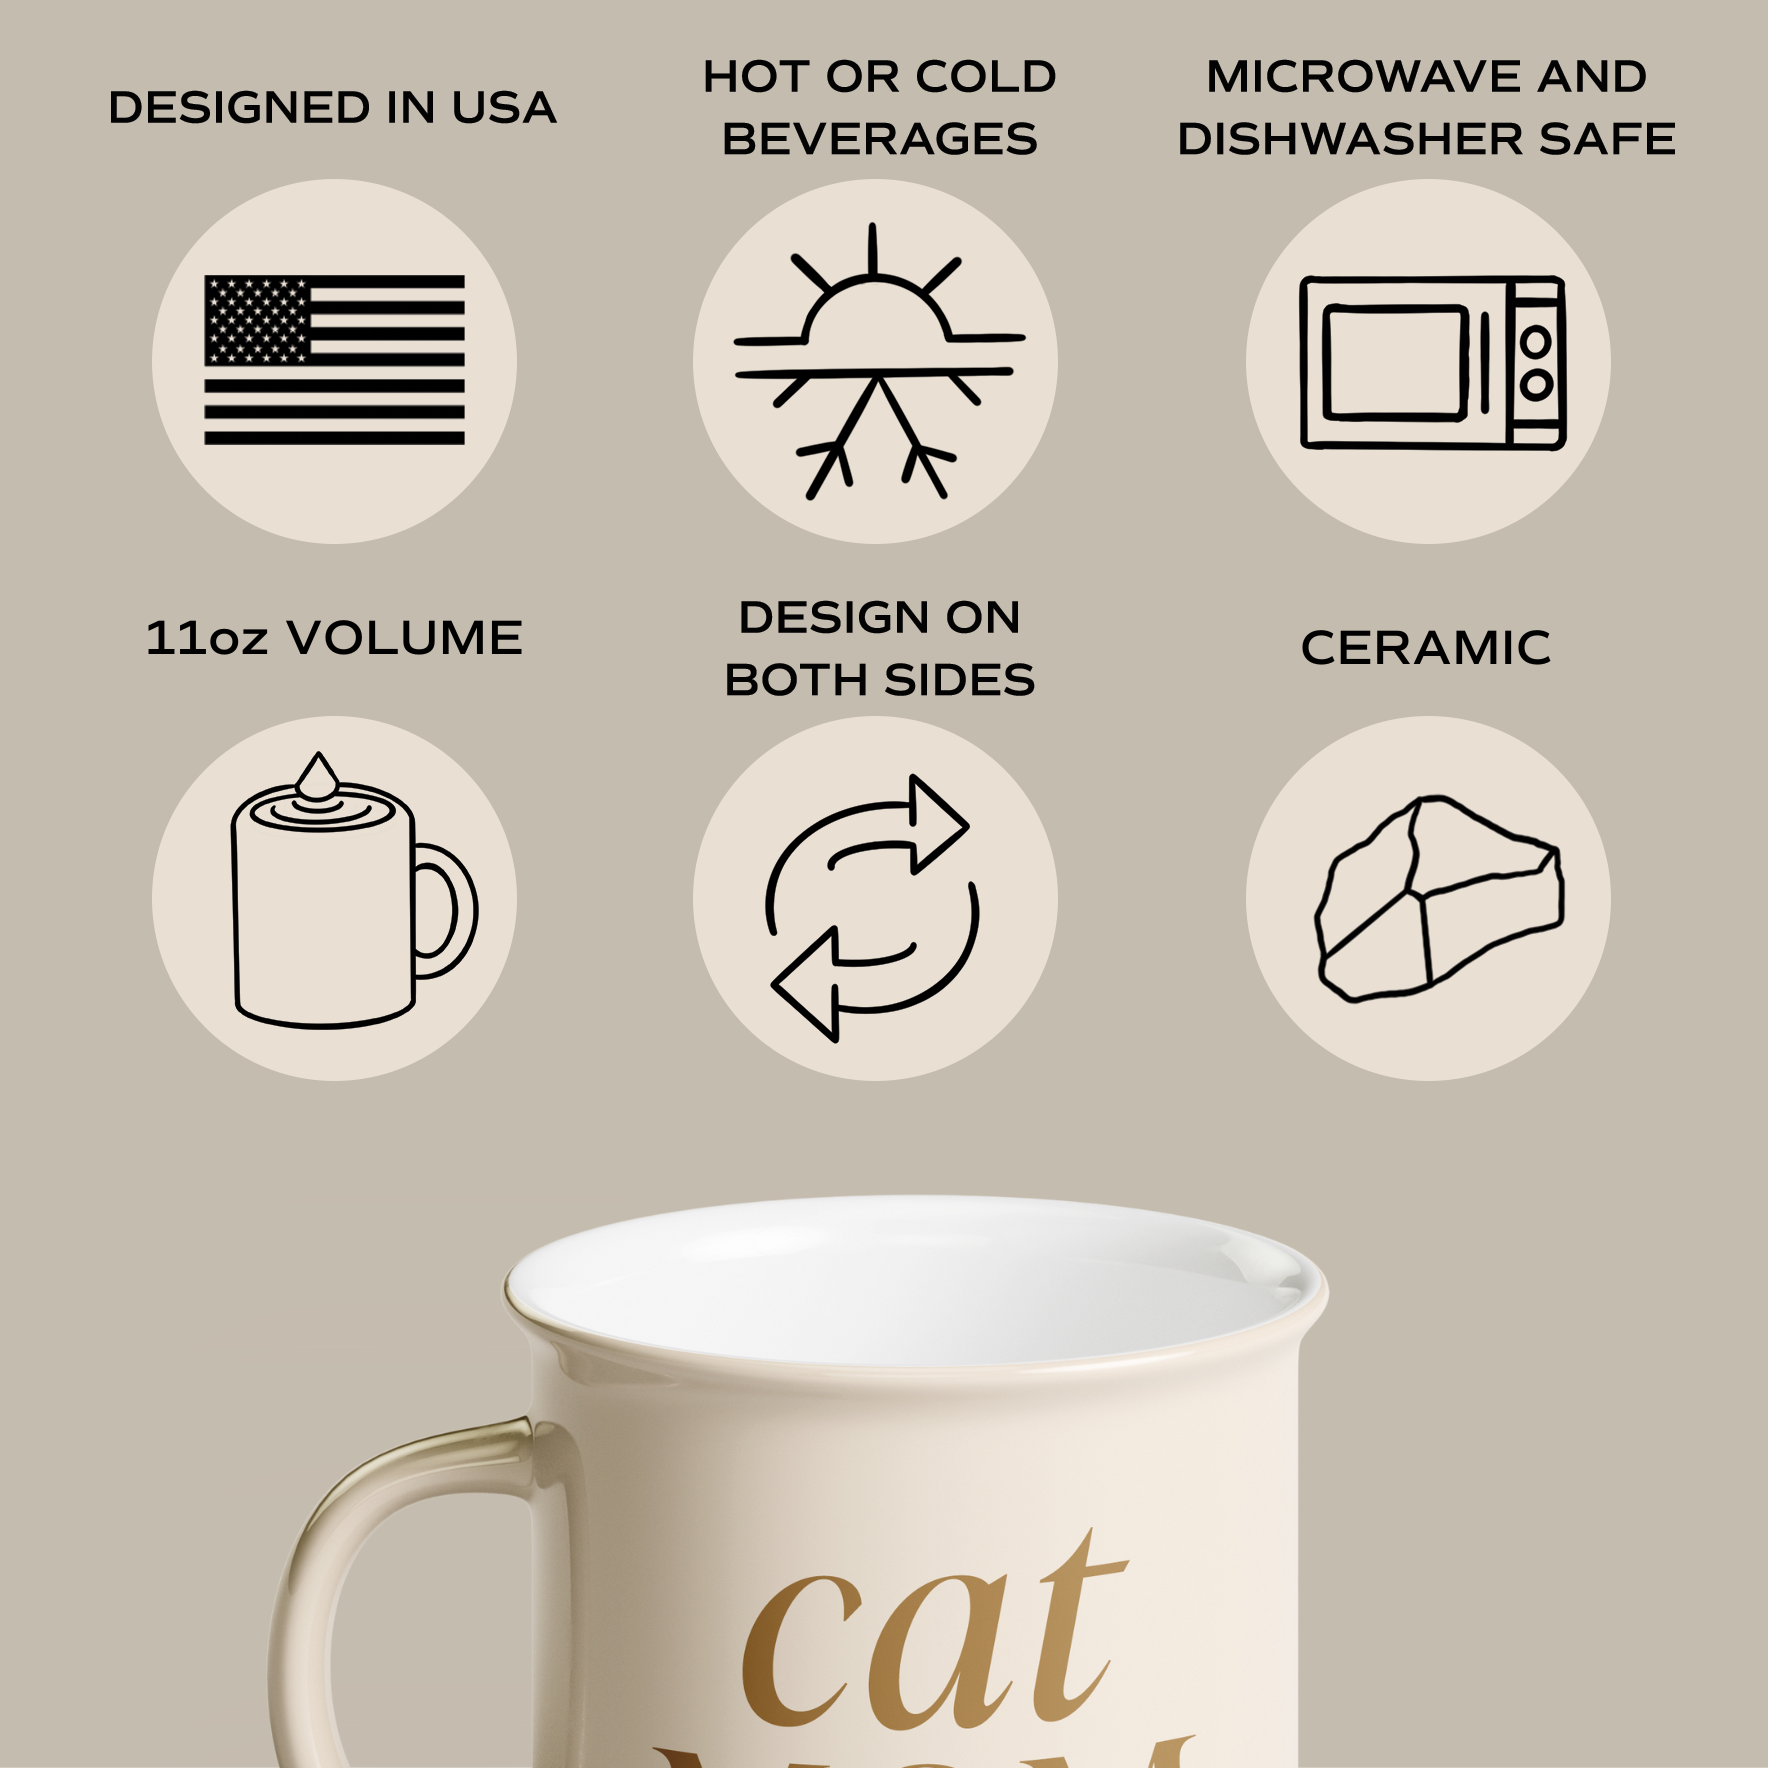 Cat Mom 11oz. Campfire Coffee Mug